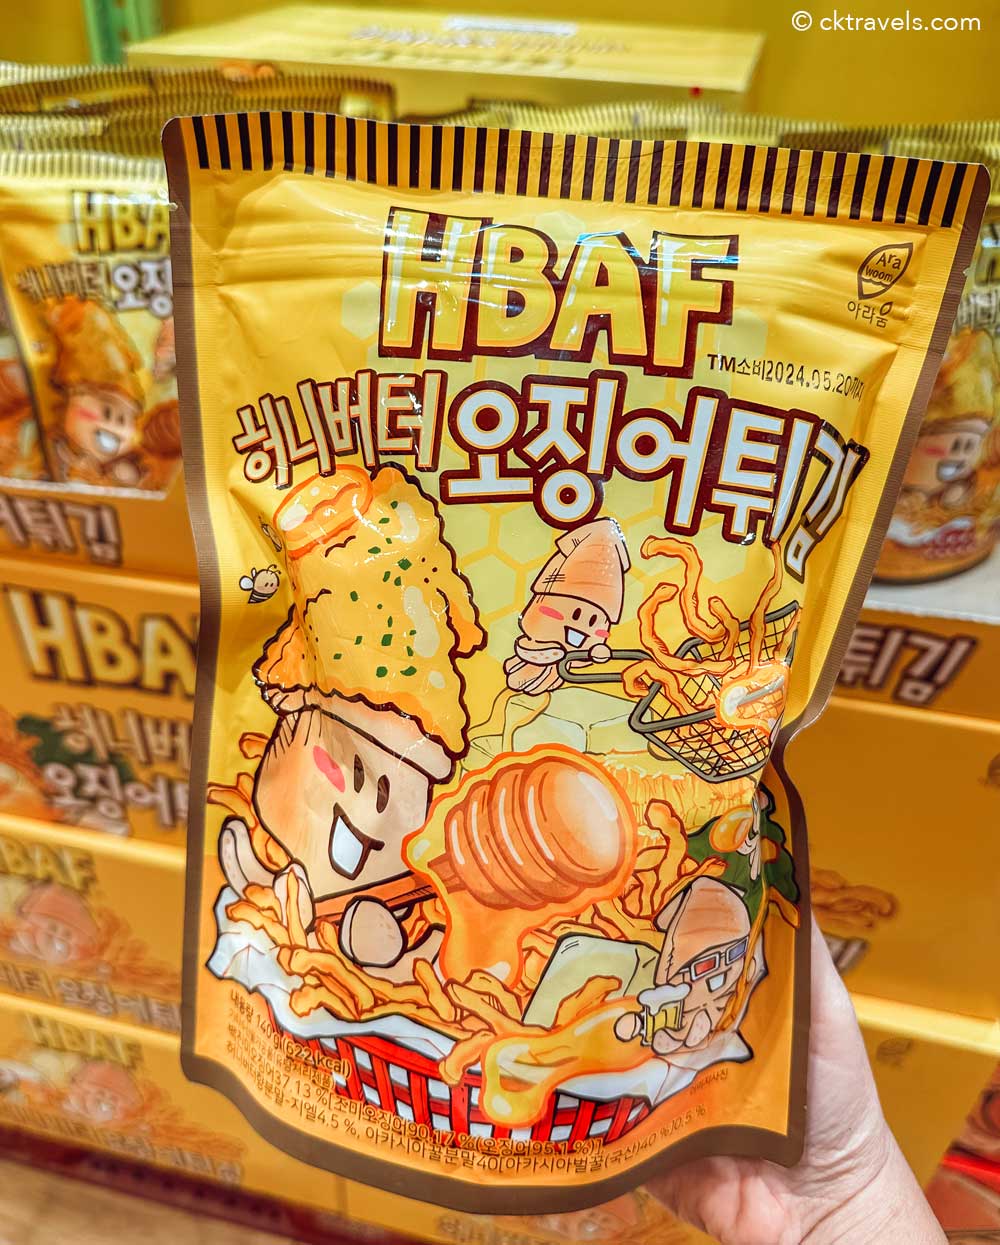 HBAF Fried Squid / Beer Tempura Snacks